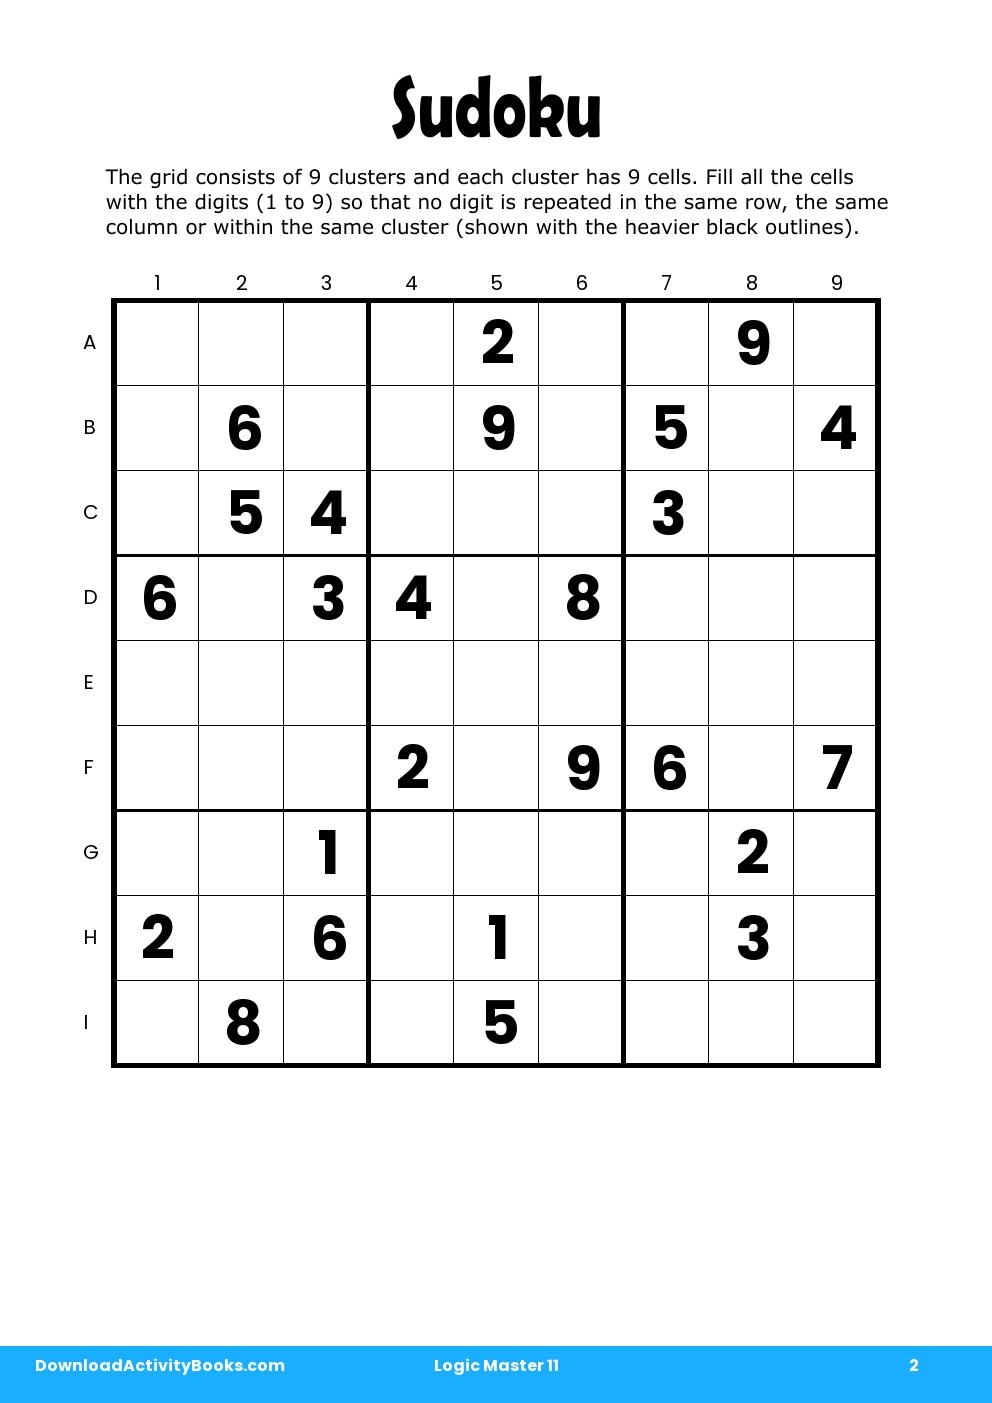 Sudoku in Logic Master 11